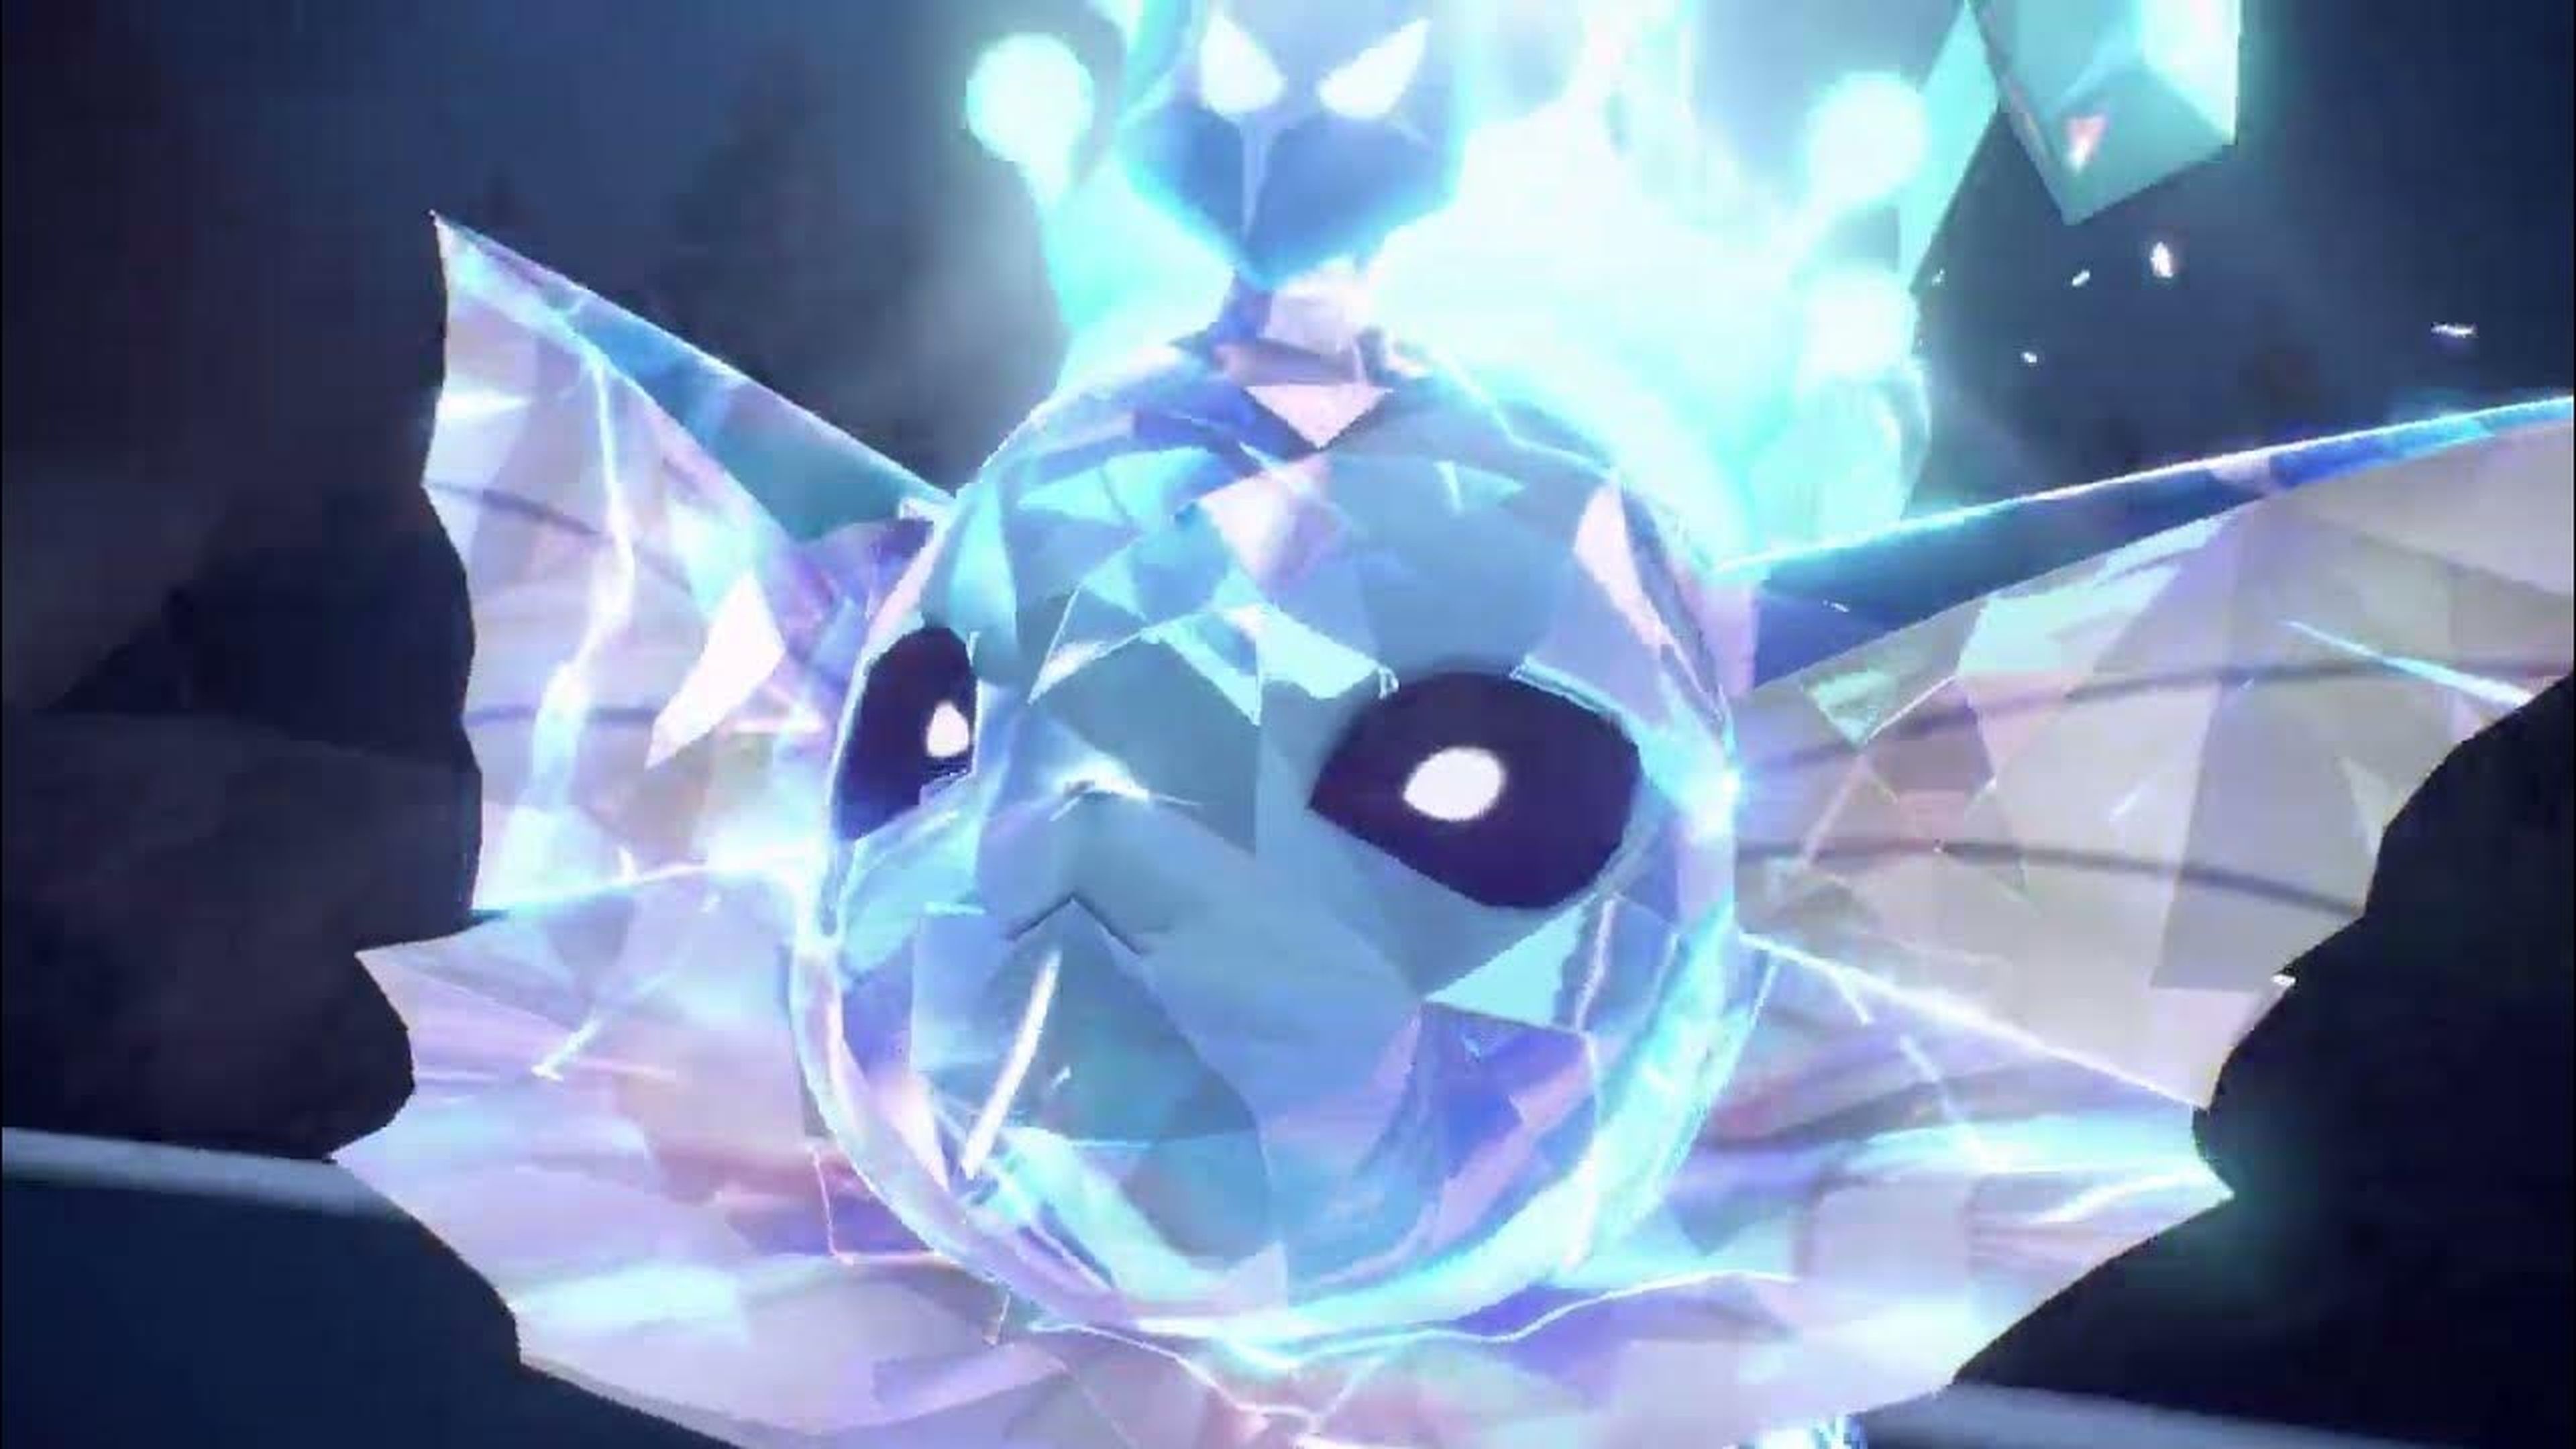 Cómo conseguir a Koraidon Shiny-Variocolor en Pokémon Escarlata y Púrpura 